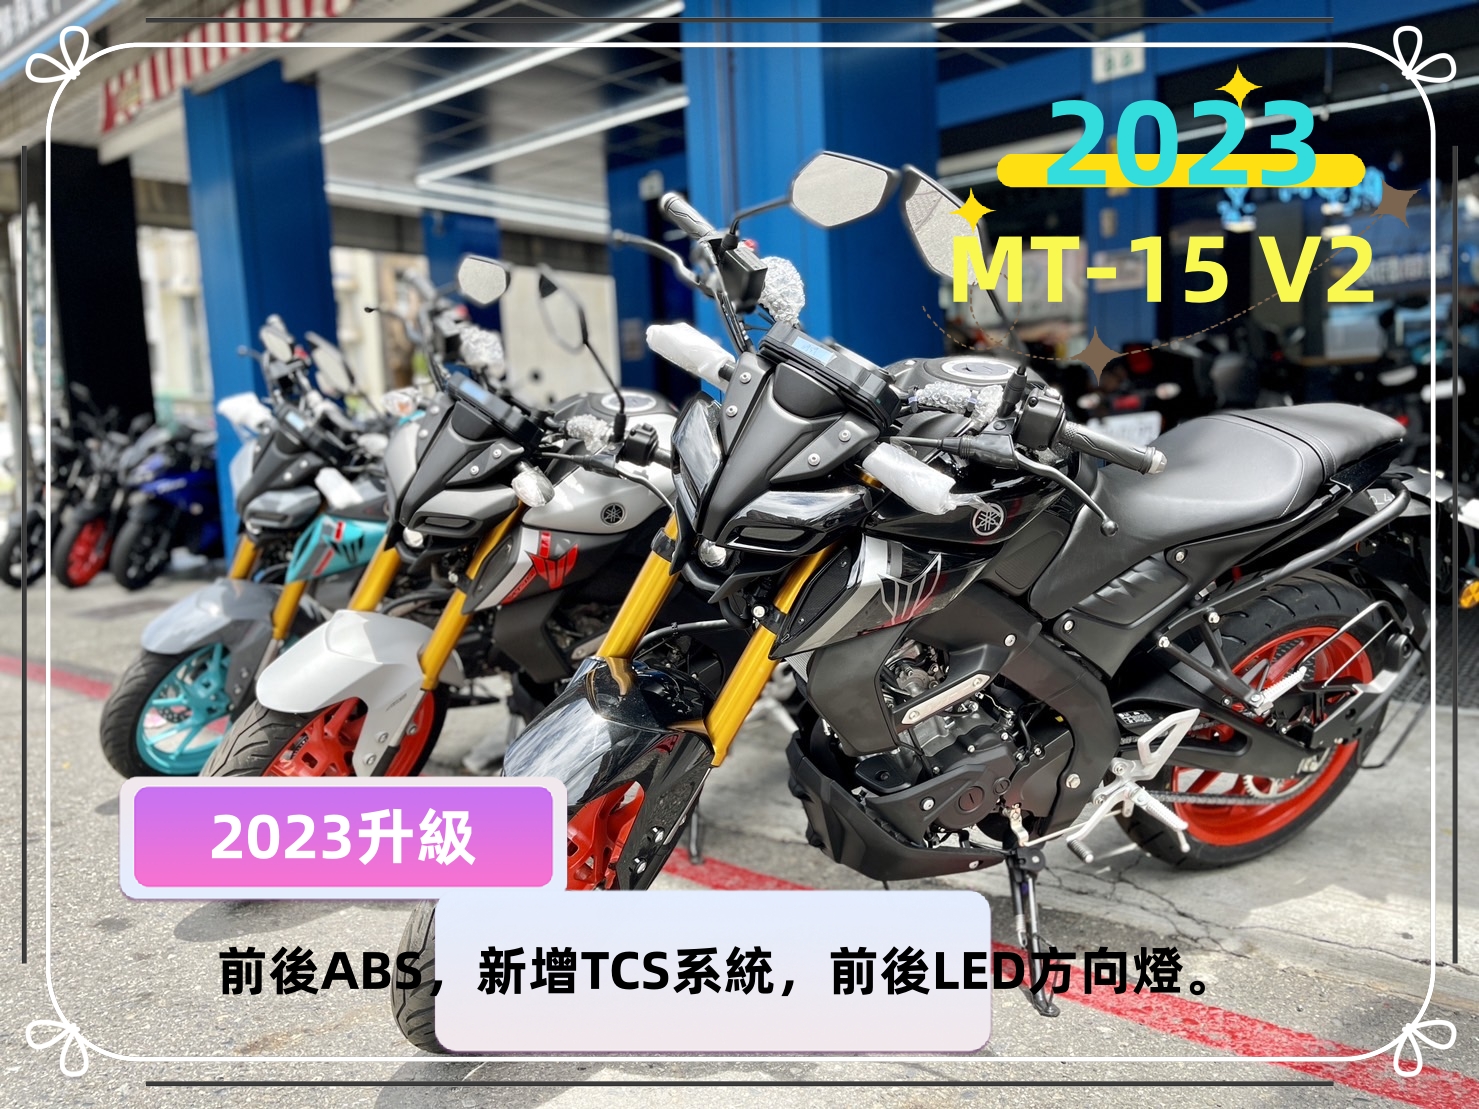 【飛翔國際】YAMAHA MT-15 V2 - 「Webike-摩托車市」 【售】2023 新車 YAMAHA 街車 MT-15 V2 ABS TCS MT15